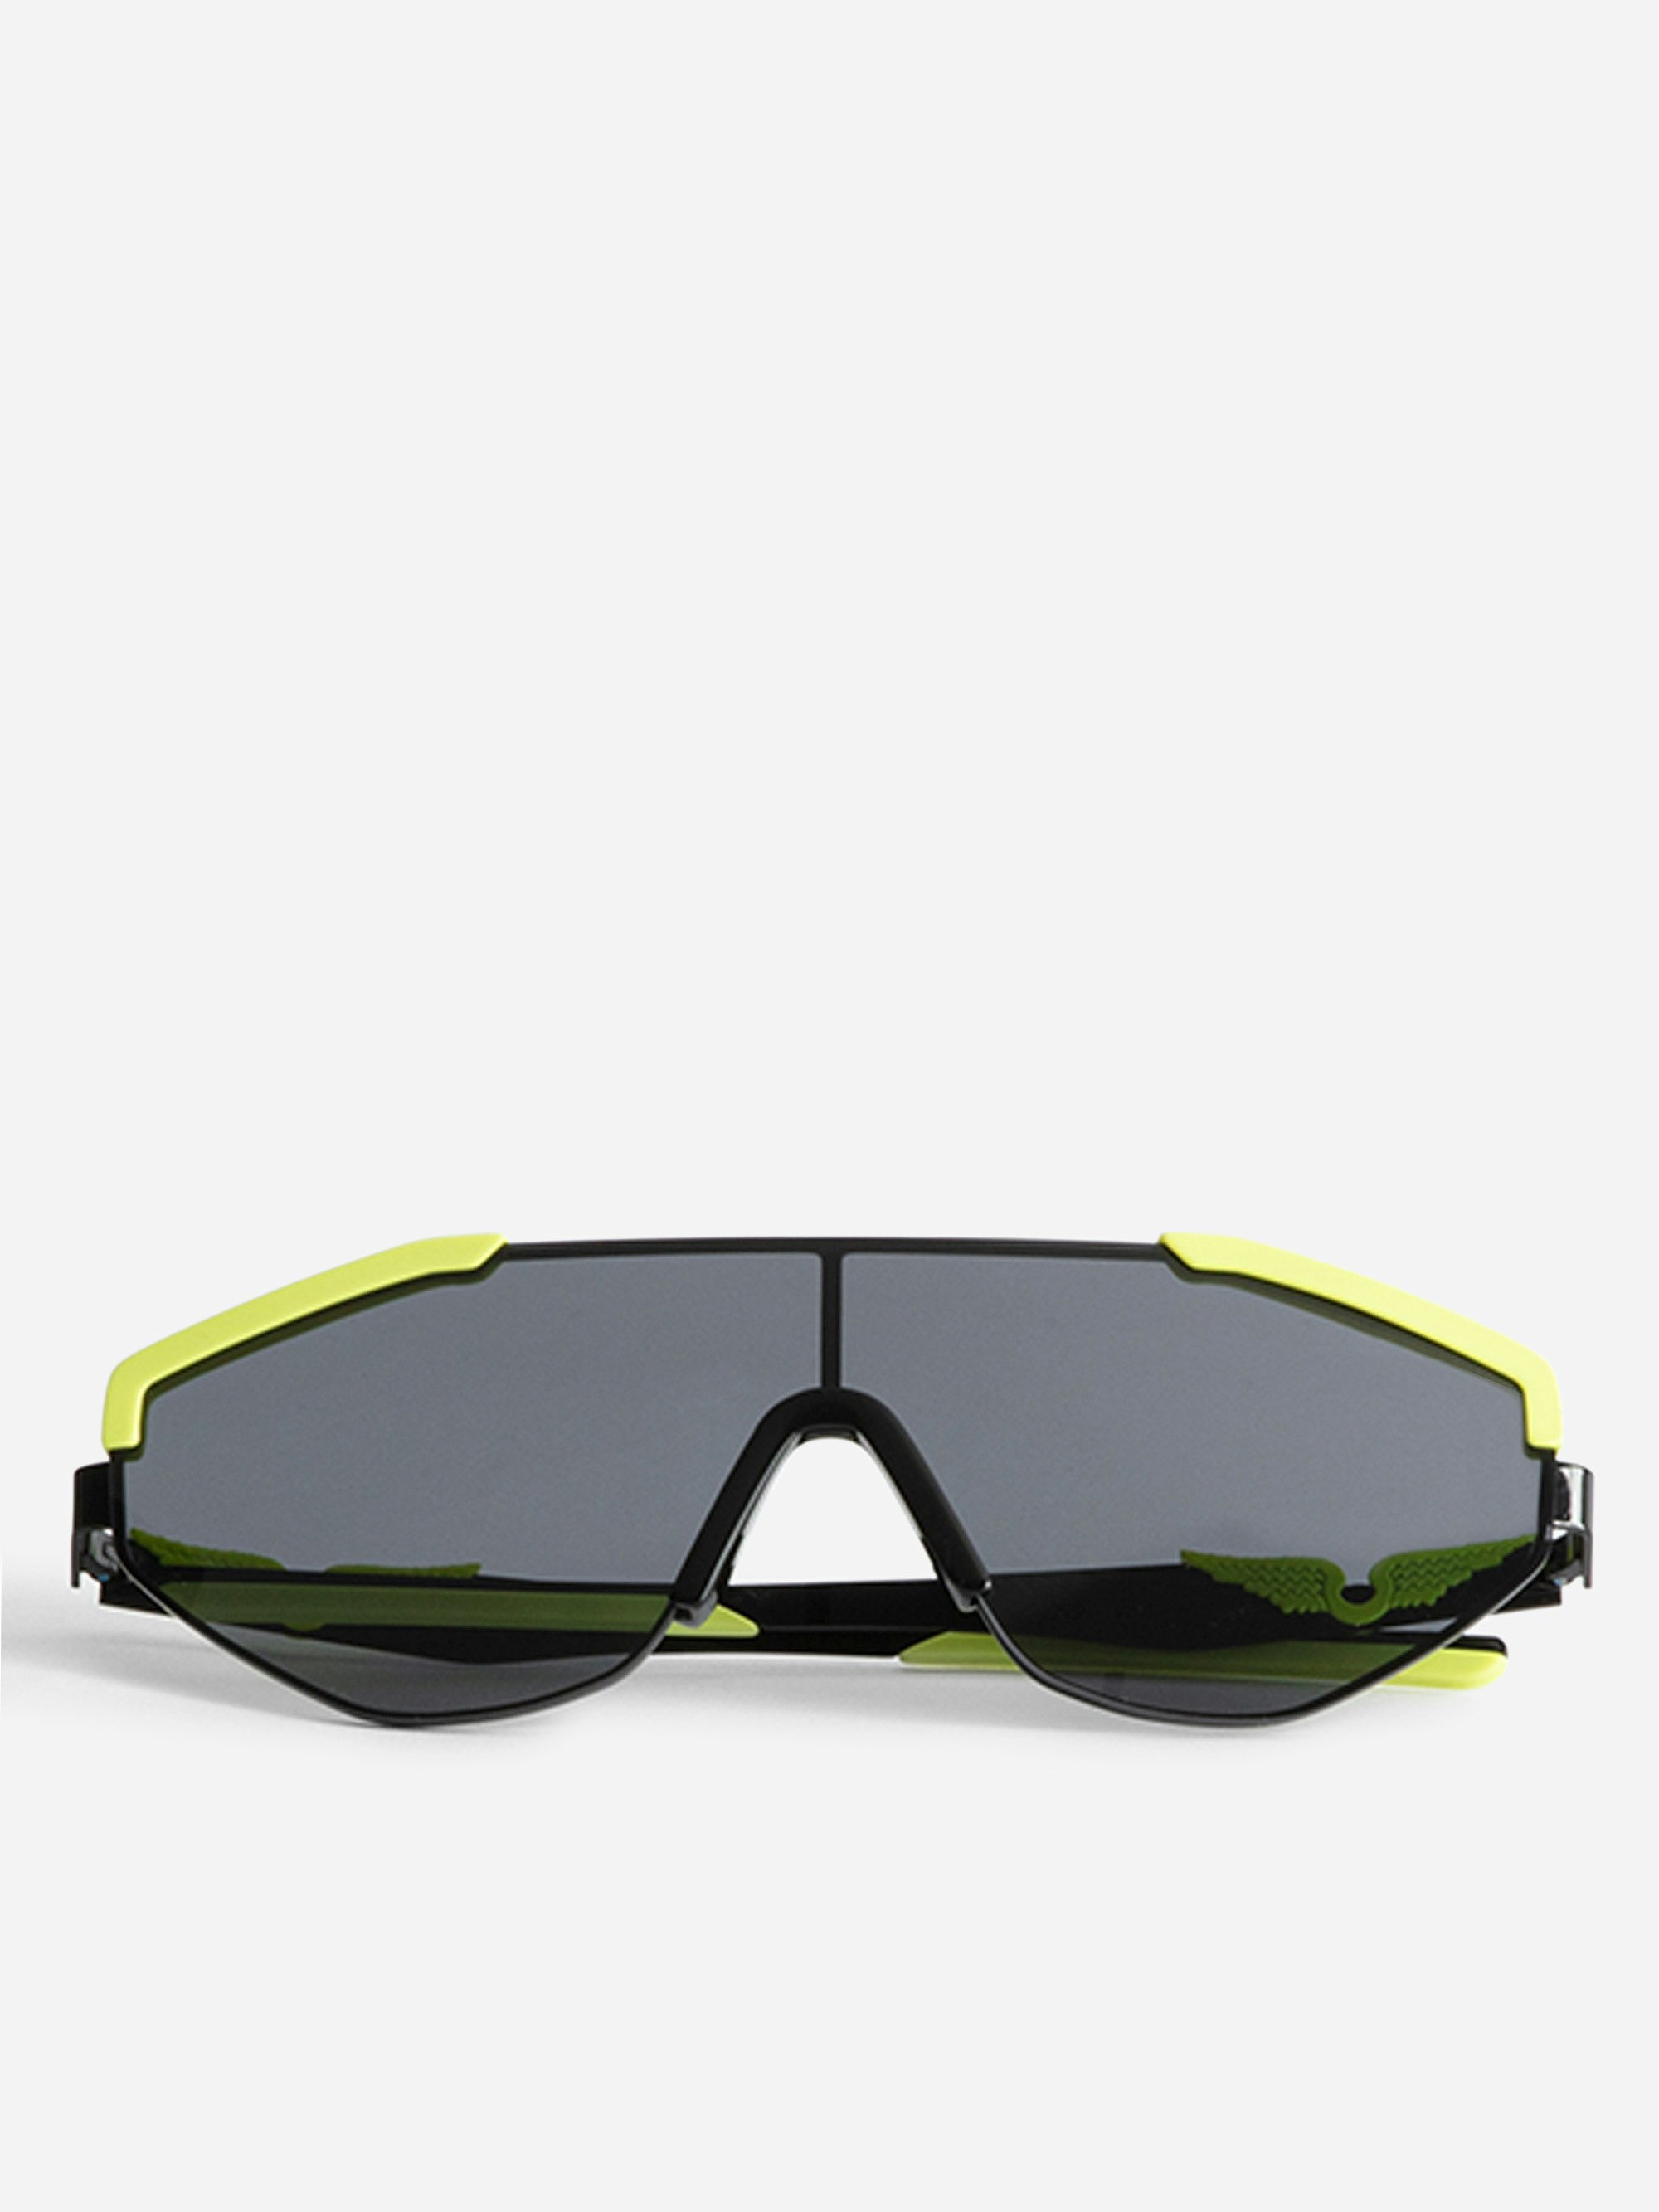 Gafas de Sol ZV23H9 Fashion Show - Futuristas gafas de sol del desfile OI23 con las emblemáticas alas de la casa en las patillas.